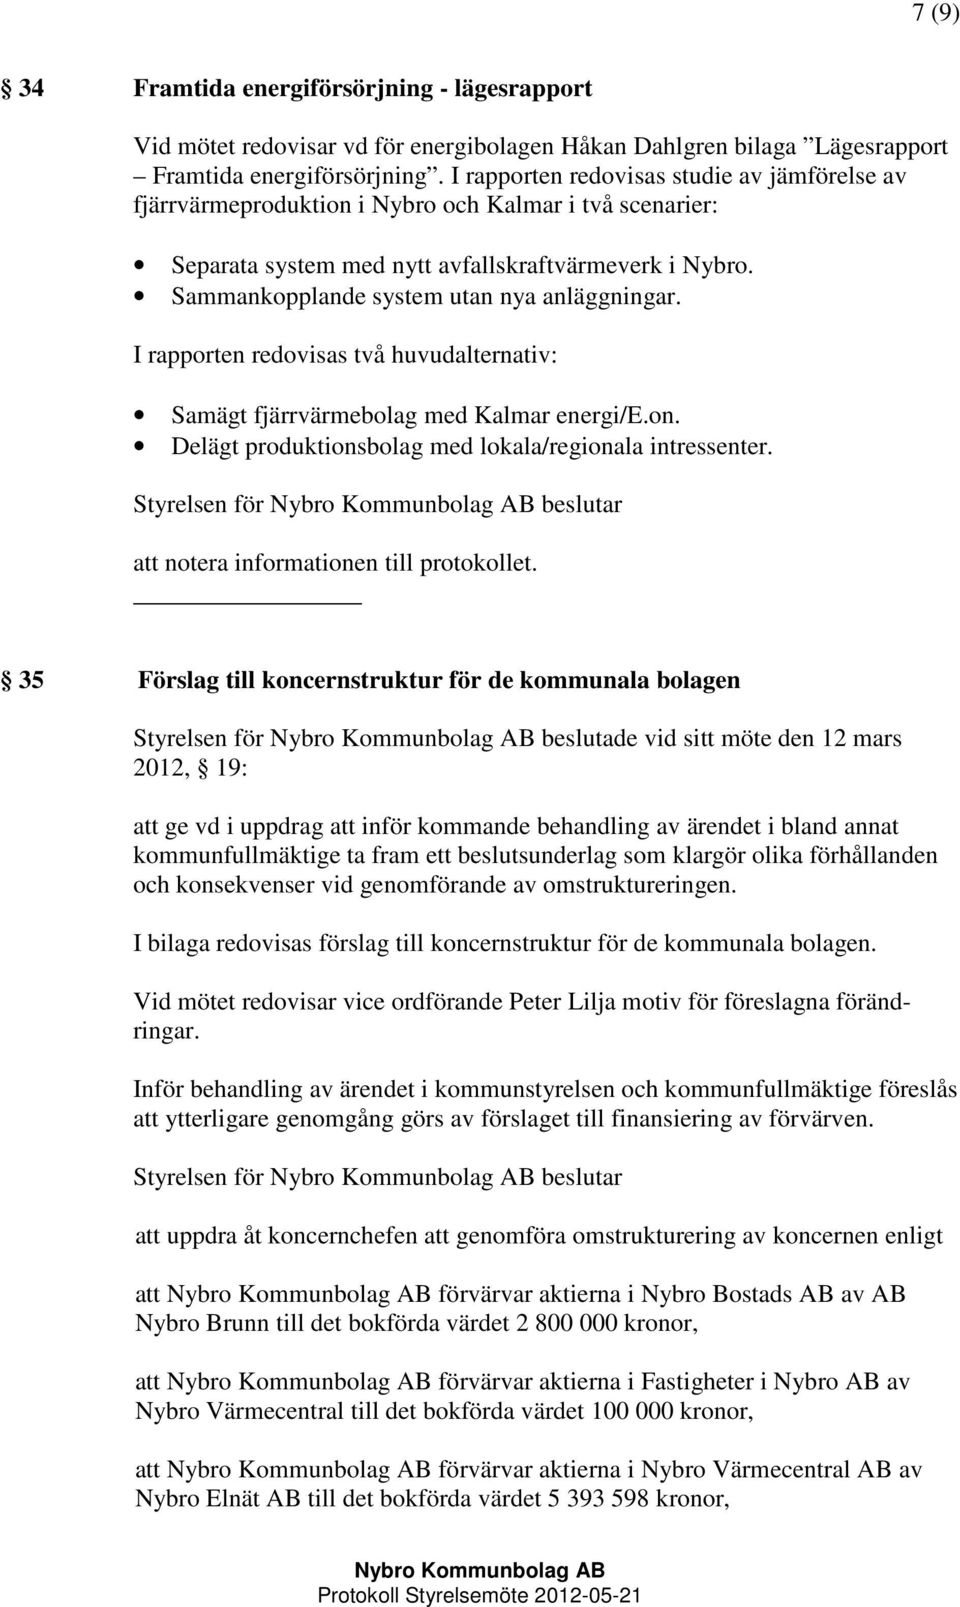 Sammankopplande system utan nya anläggningar. I rapporten redovisas två huvudalternativ: Samägt fjärrvärmebolag med Kalmar energi/e.on. Delägt produktionsbolag med lokala/regionala intressenter.